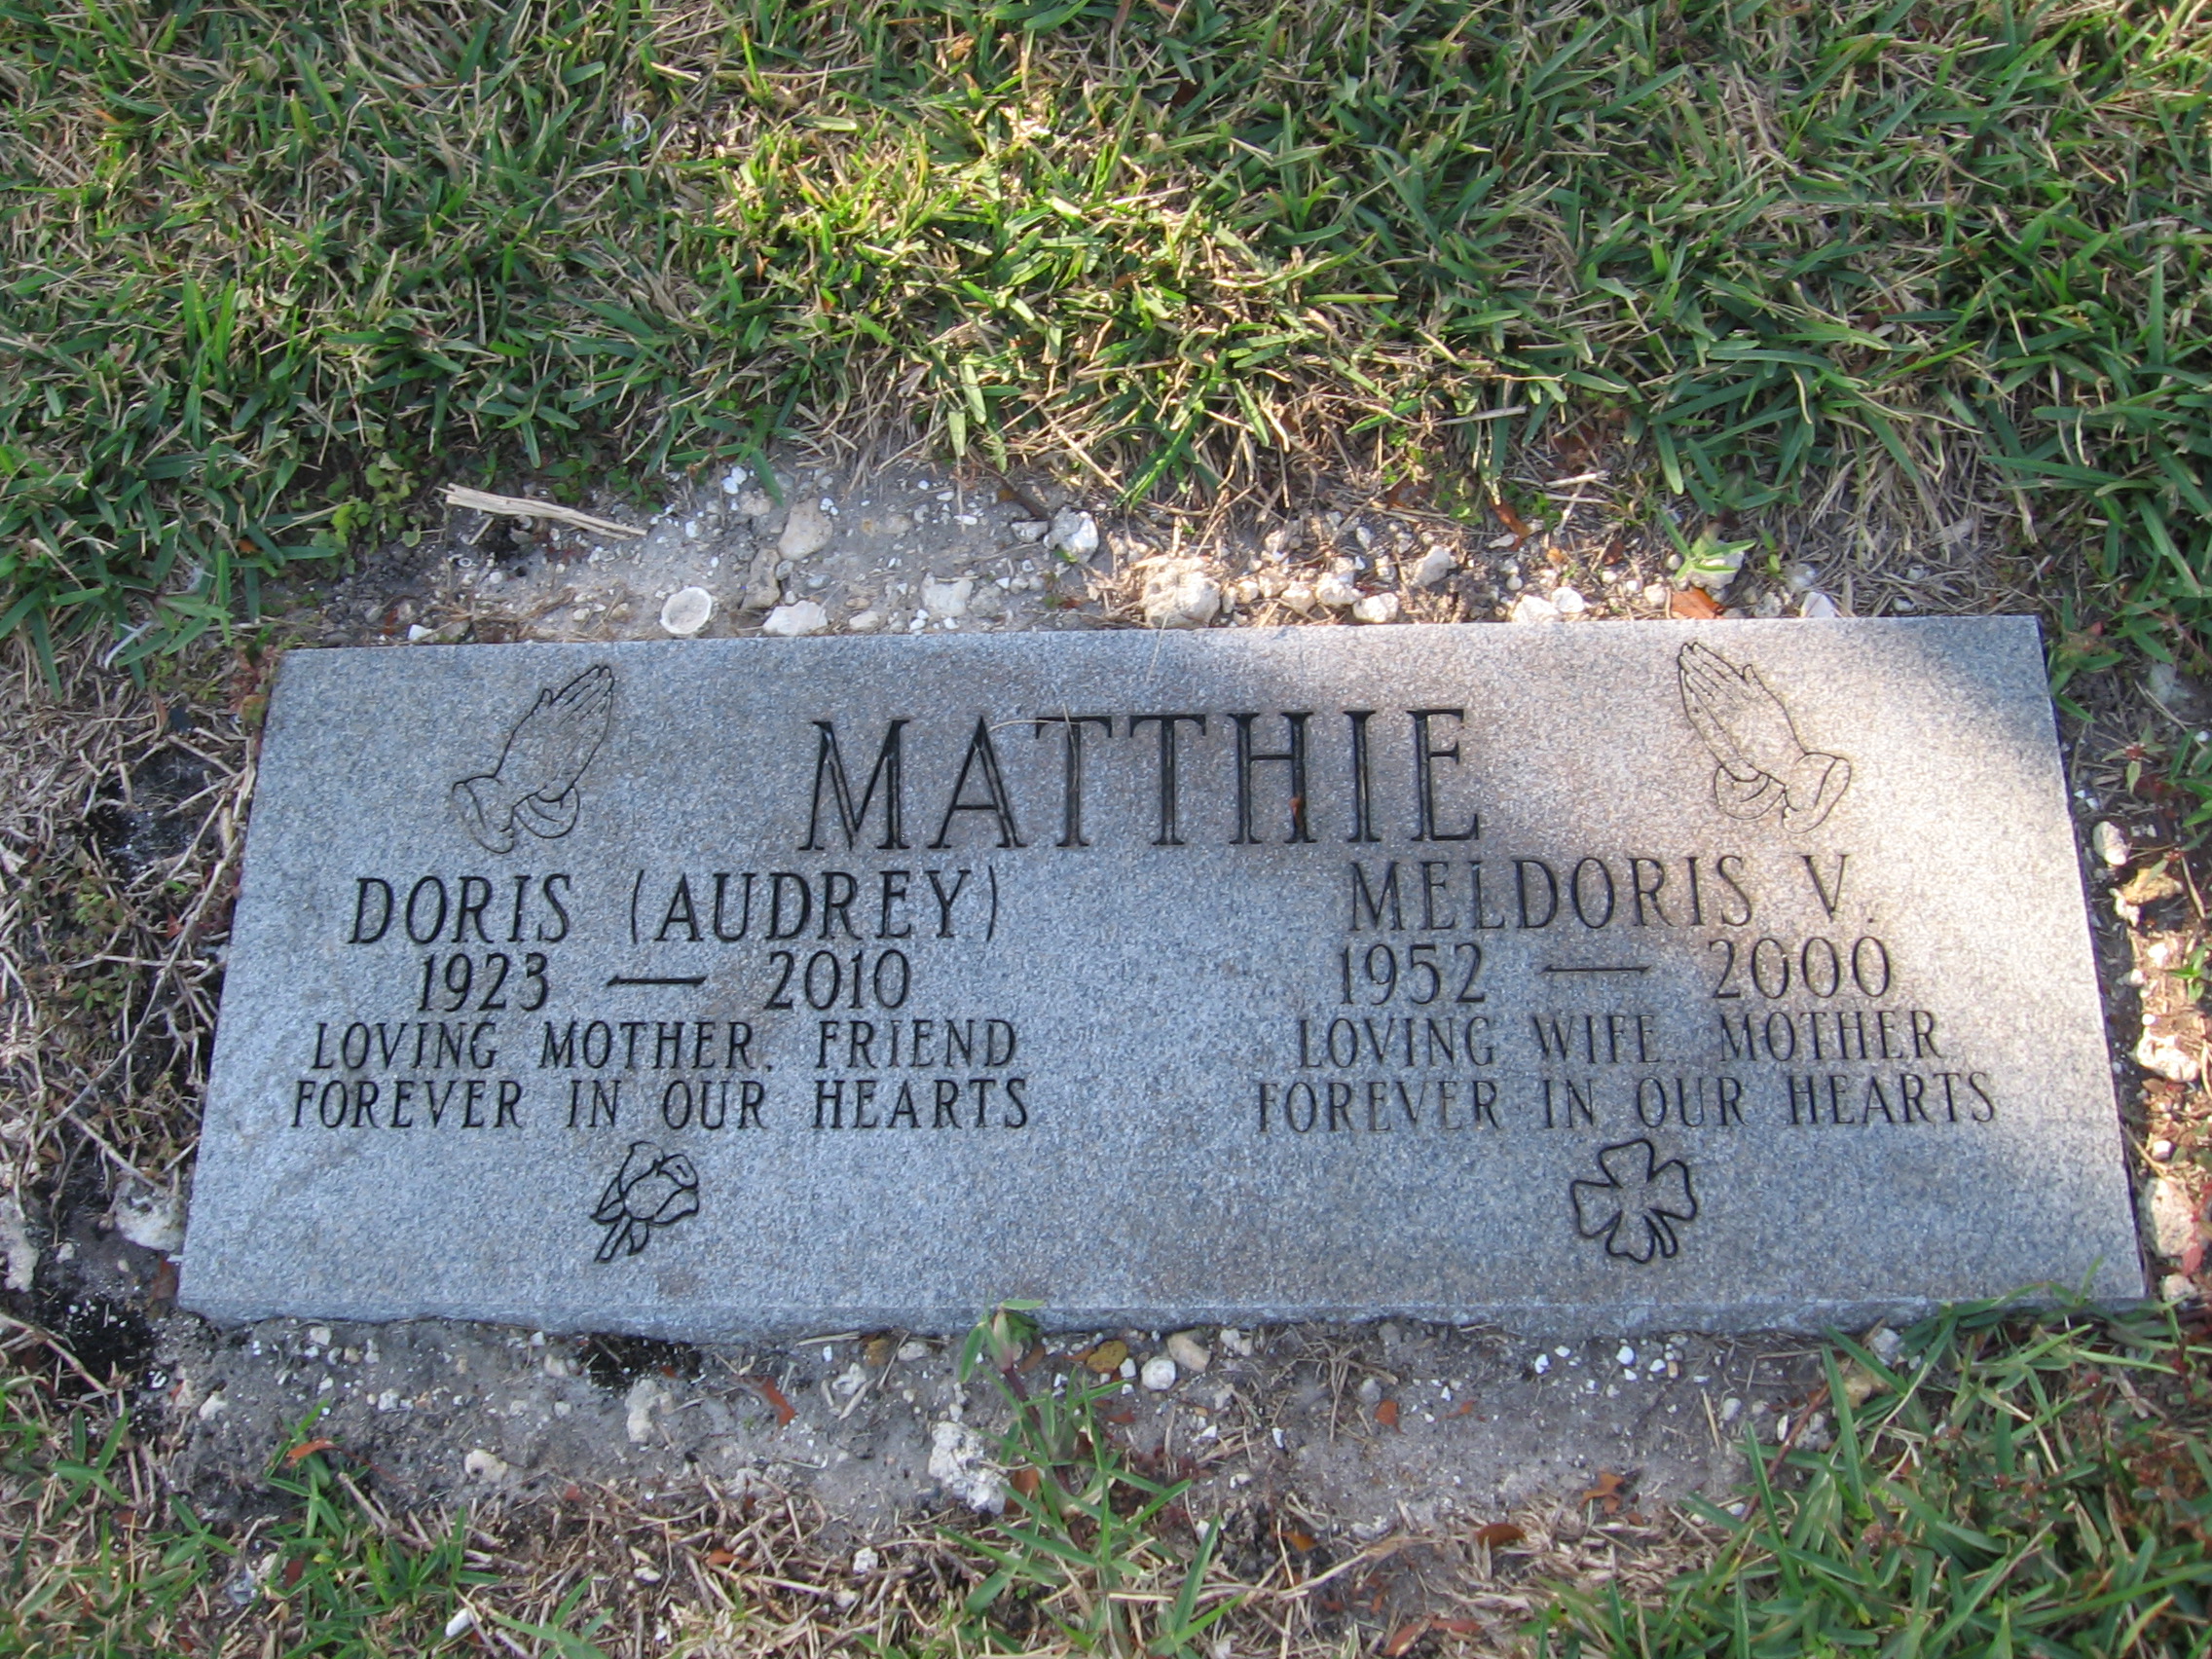 Doris Audrey Matthie